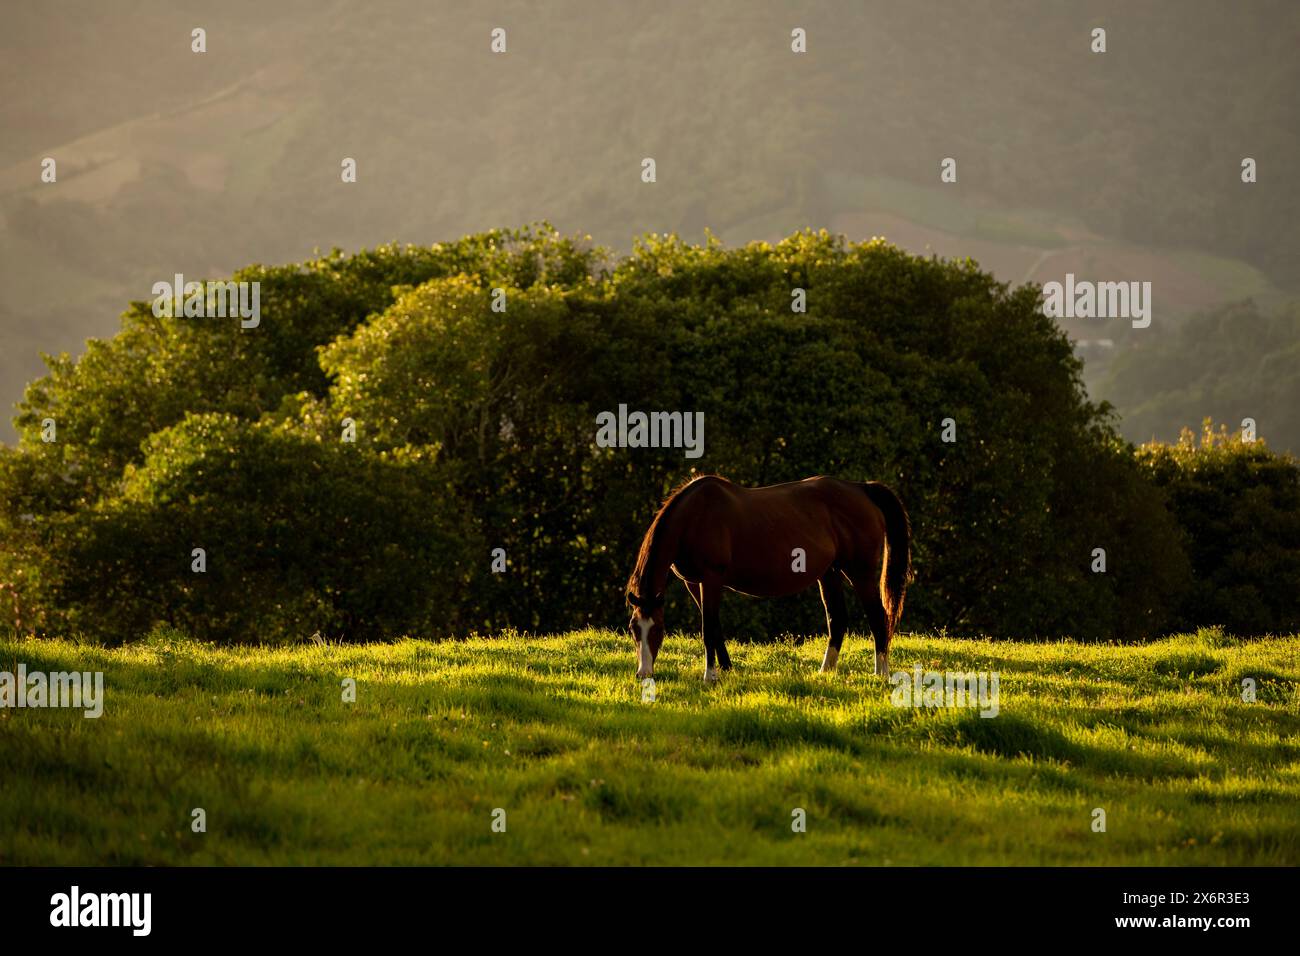 Vollblut-Pferd weidet im Abendlicht – Stockfoto Stockfoto